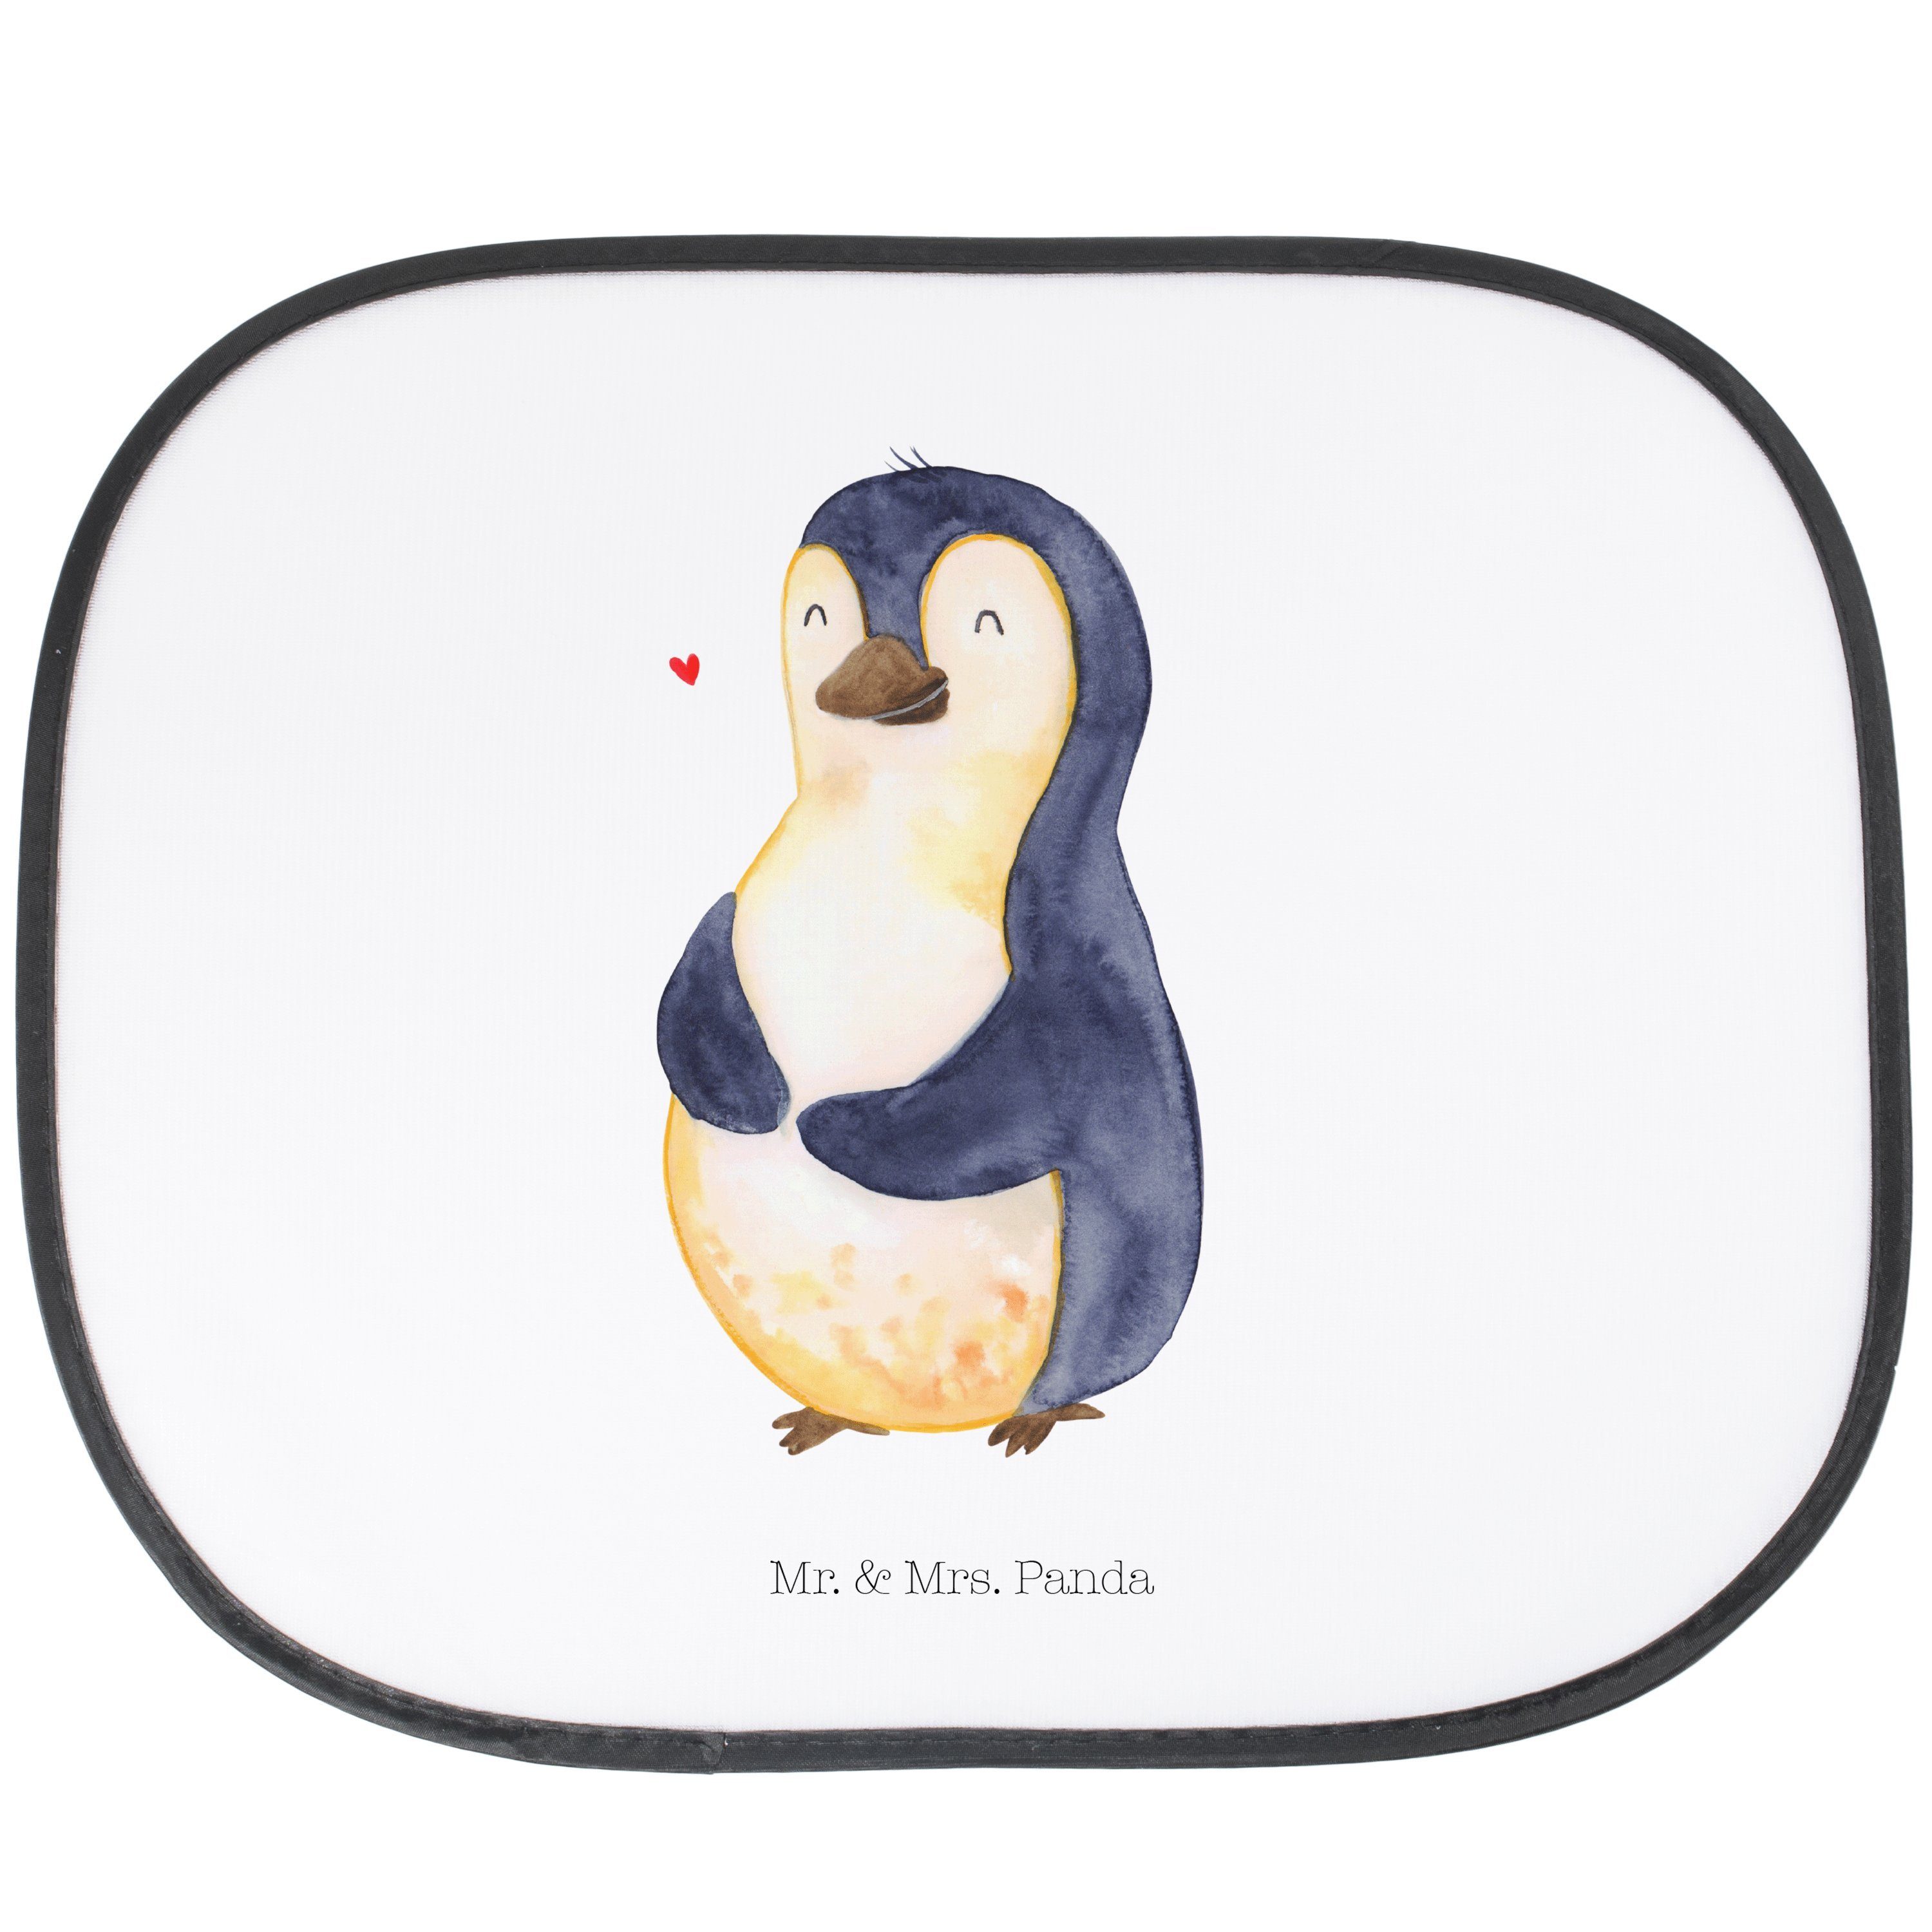 Sonnenschutz Pinguin Mond - Schwarz - Geschenk, Auto Sonnenschutz, Pinguine,  Sonne, Mr. & Mrs. Panda, Seidenmatt